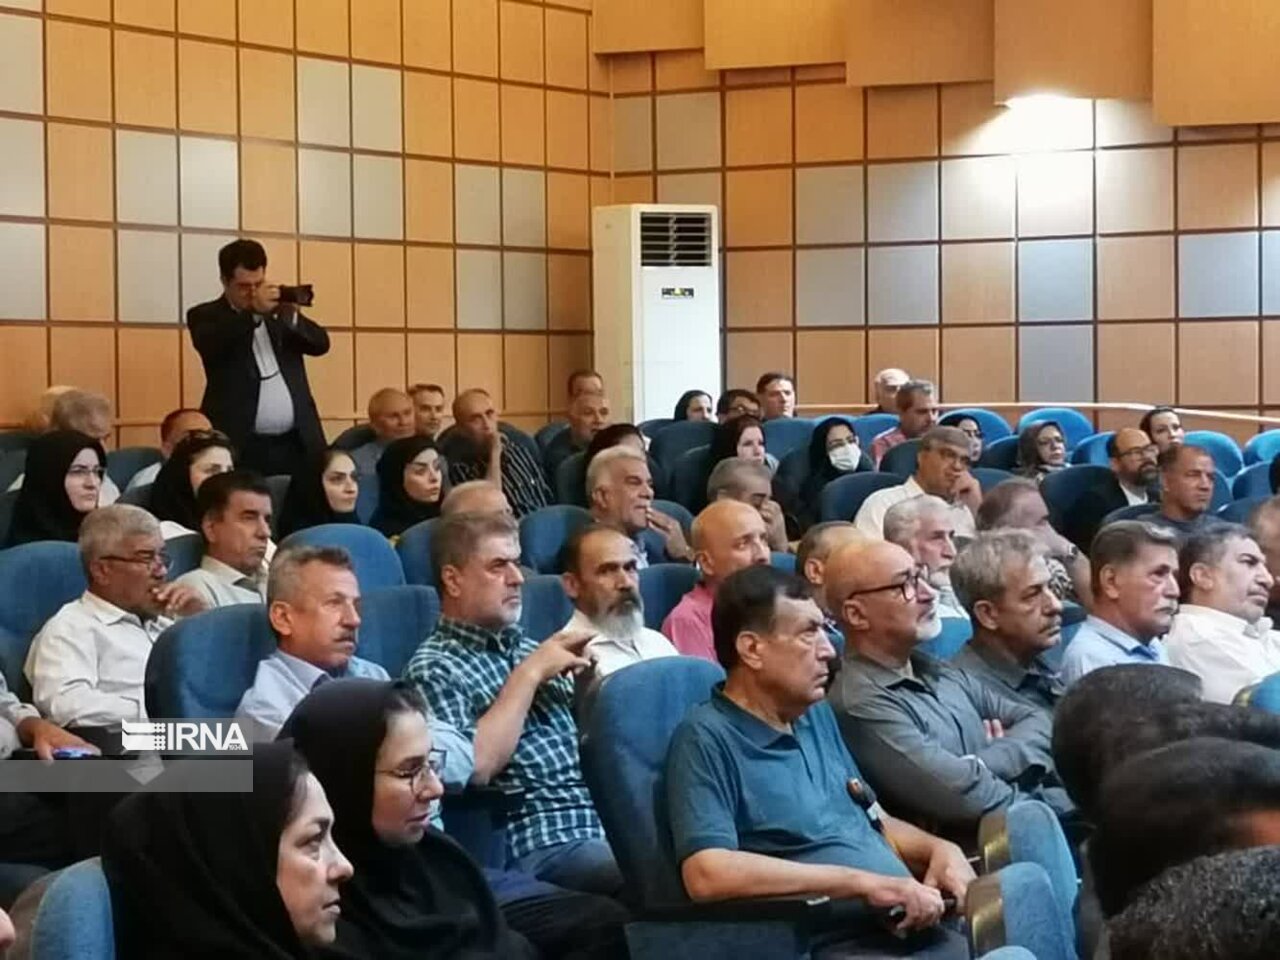 درد دل کارگران فارس در روز تامین اجتماعی؛ از درمان تا تبیین اهمیت تولید به جای سفته بازی